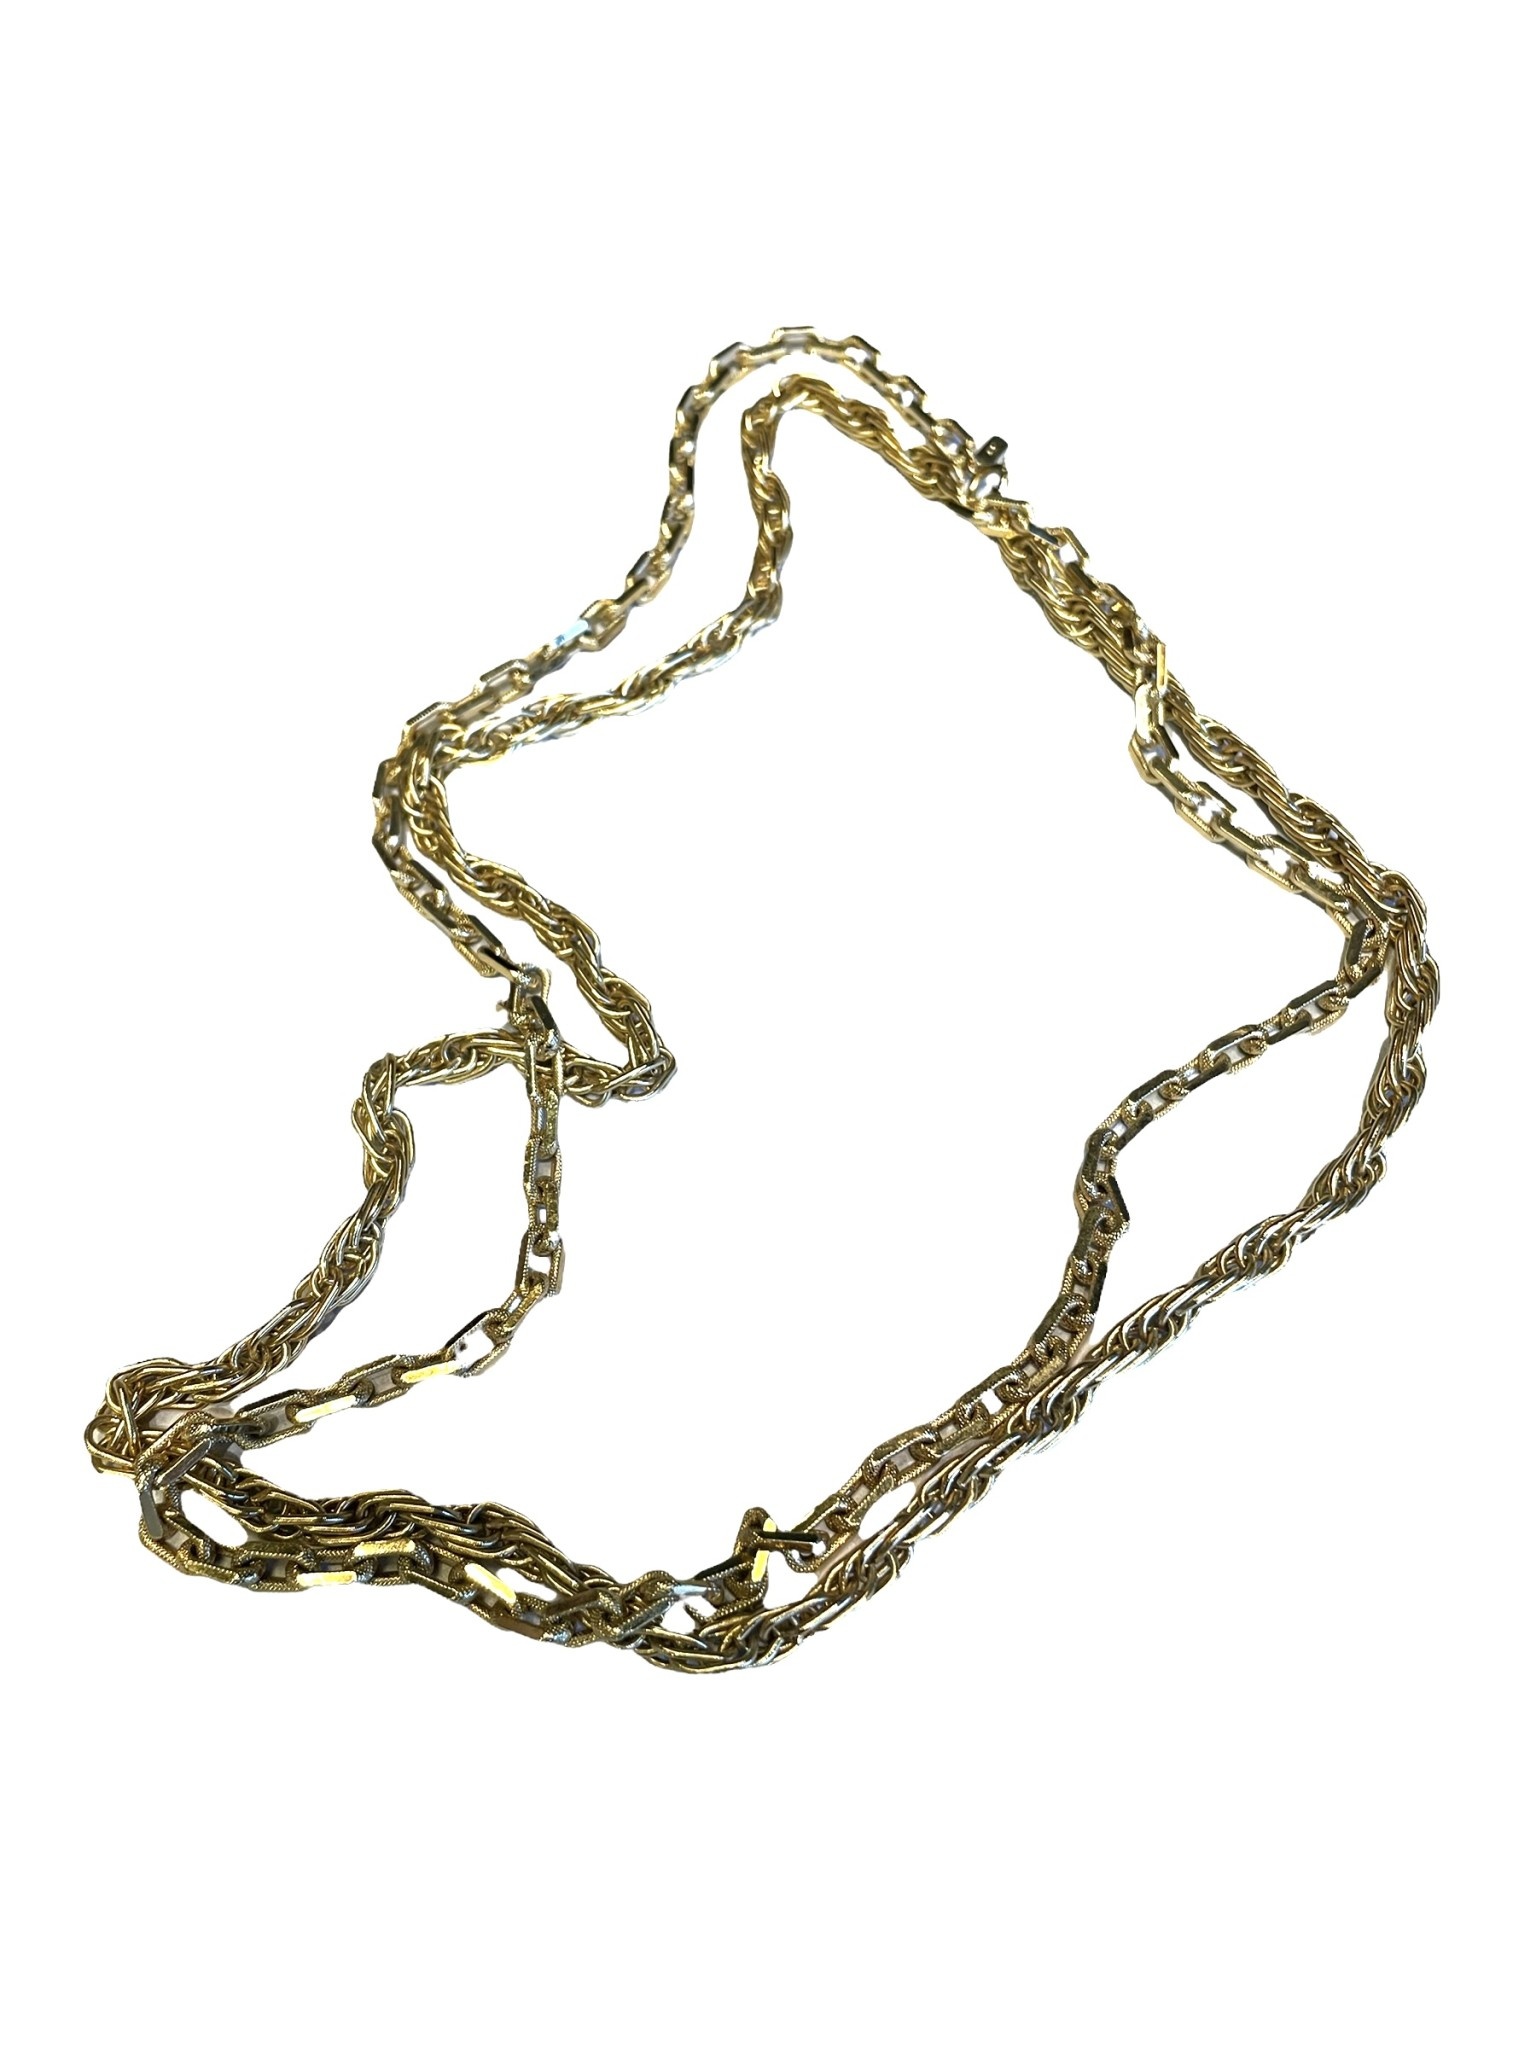 Vintage Monet Necklace Choker Goldtone Links Elegant … - Gem